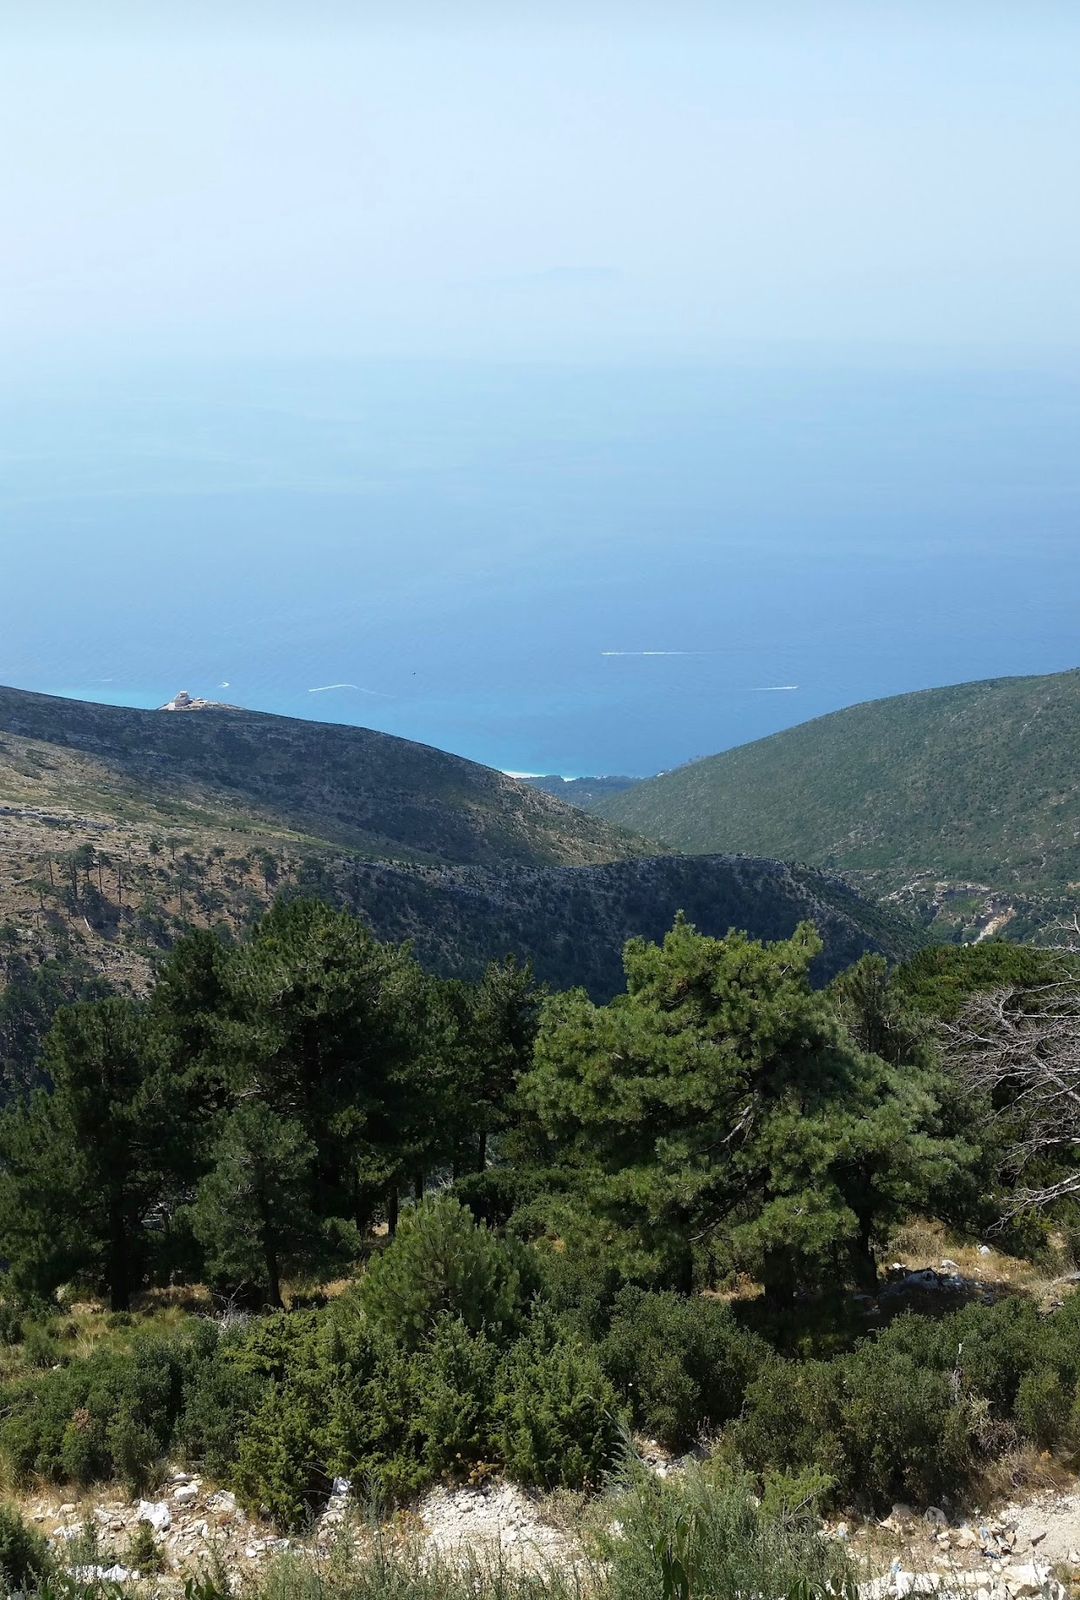 El Parque Nacional Llogara es uno de los parajes naturales más importantes del sur de Albania. Se encuentra a 40 km al sureste de la ciudad de Vlora, en la frontera entre el mar Adriático y el mar Jónico.